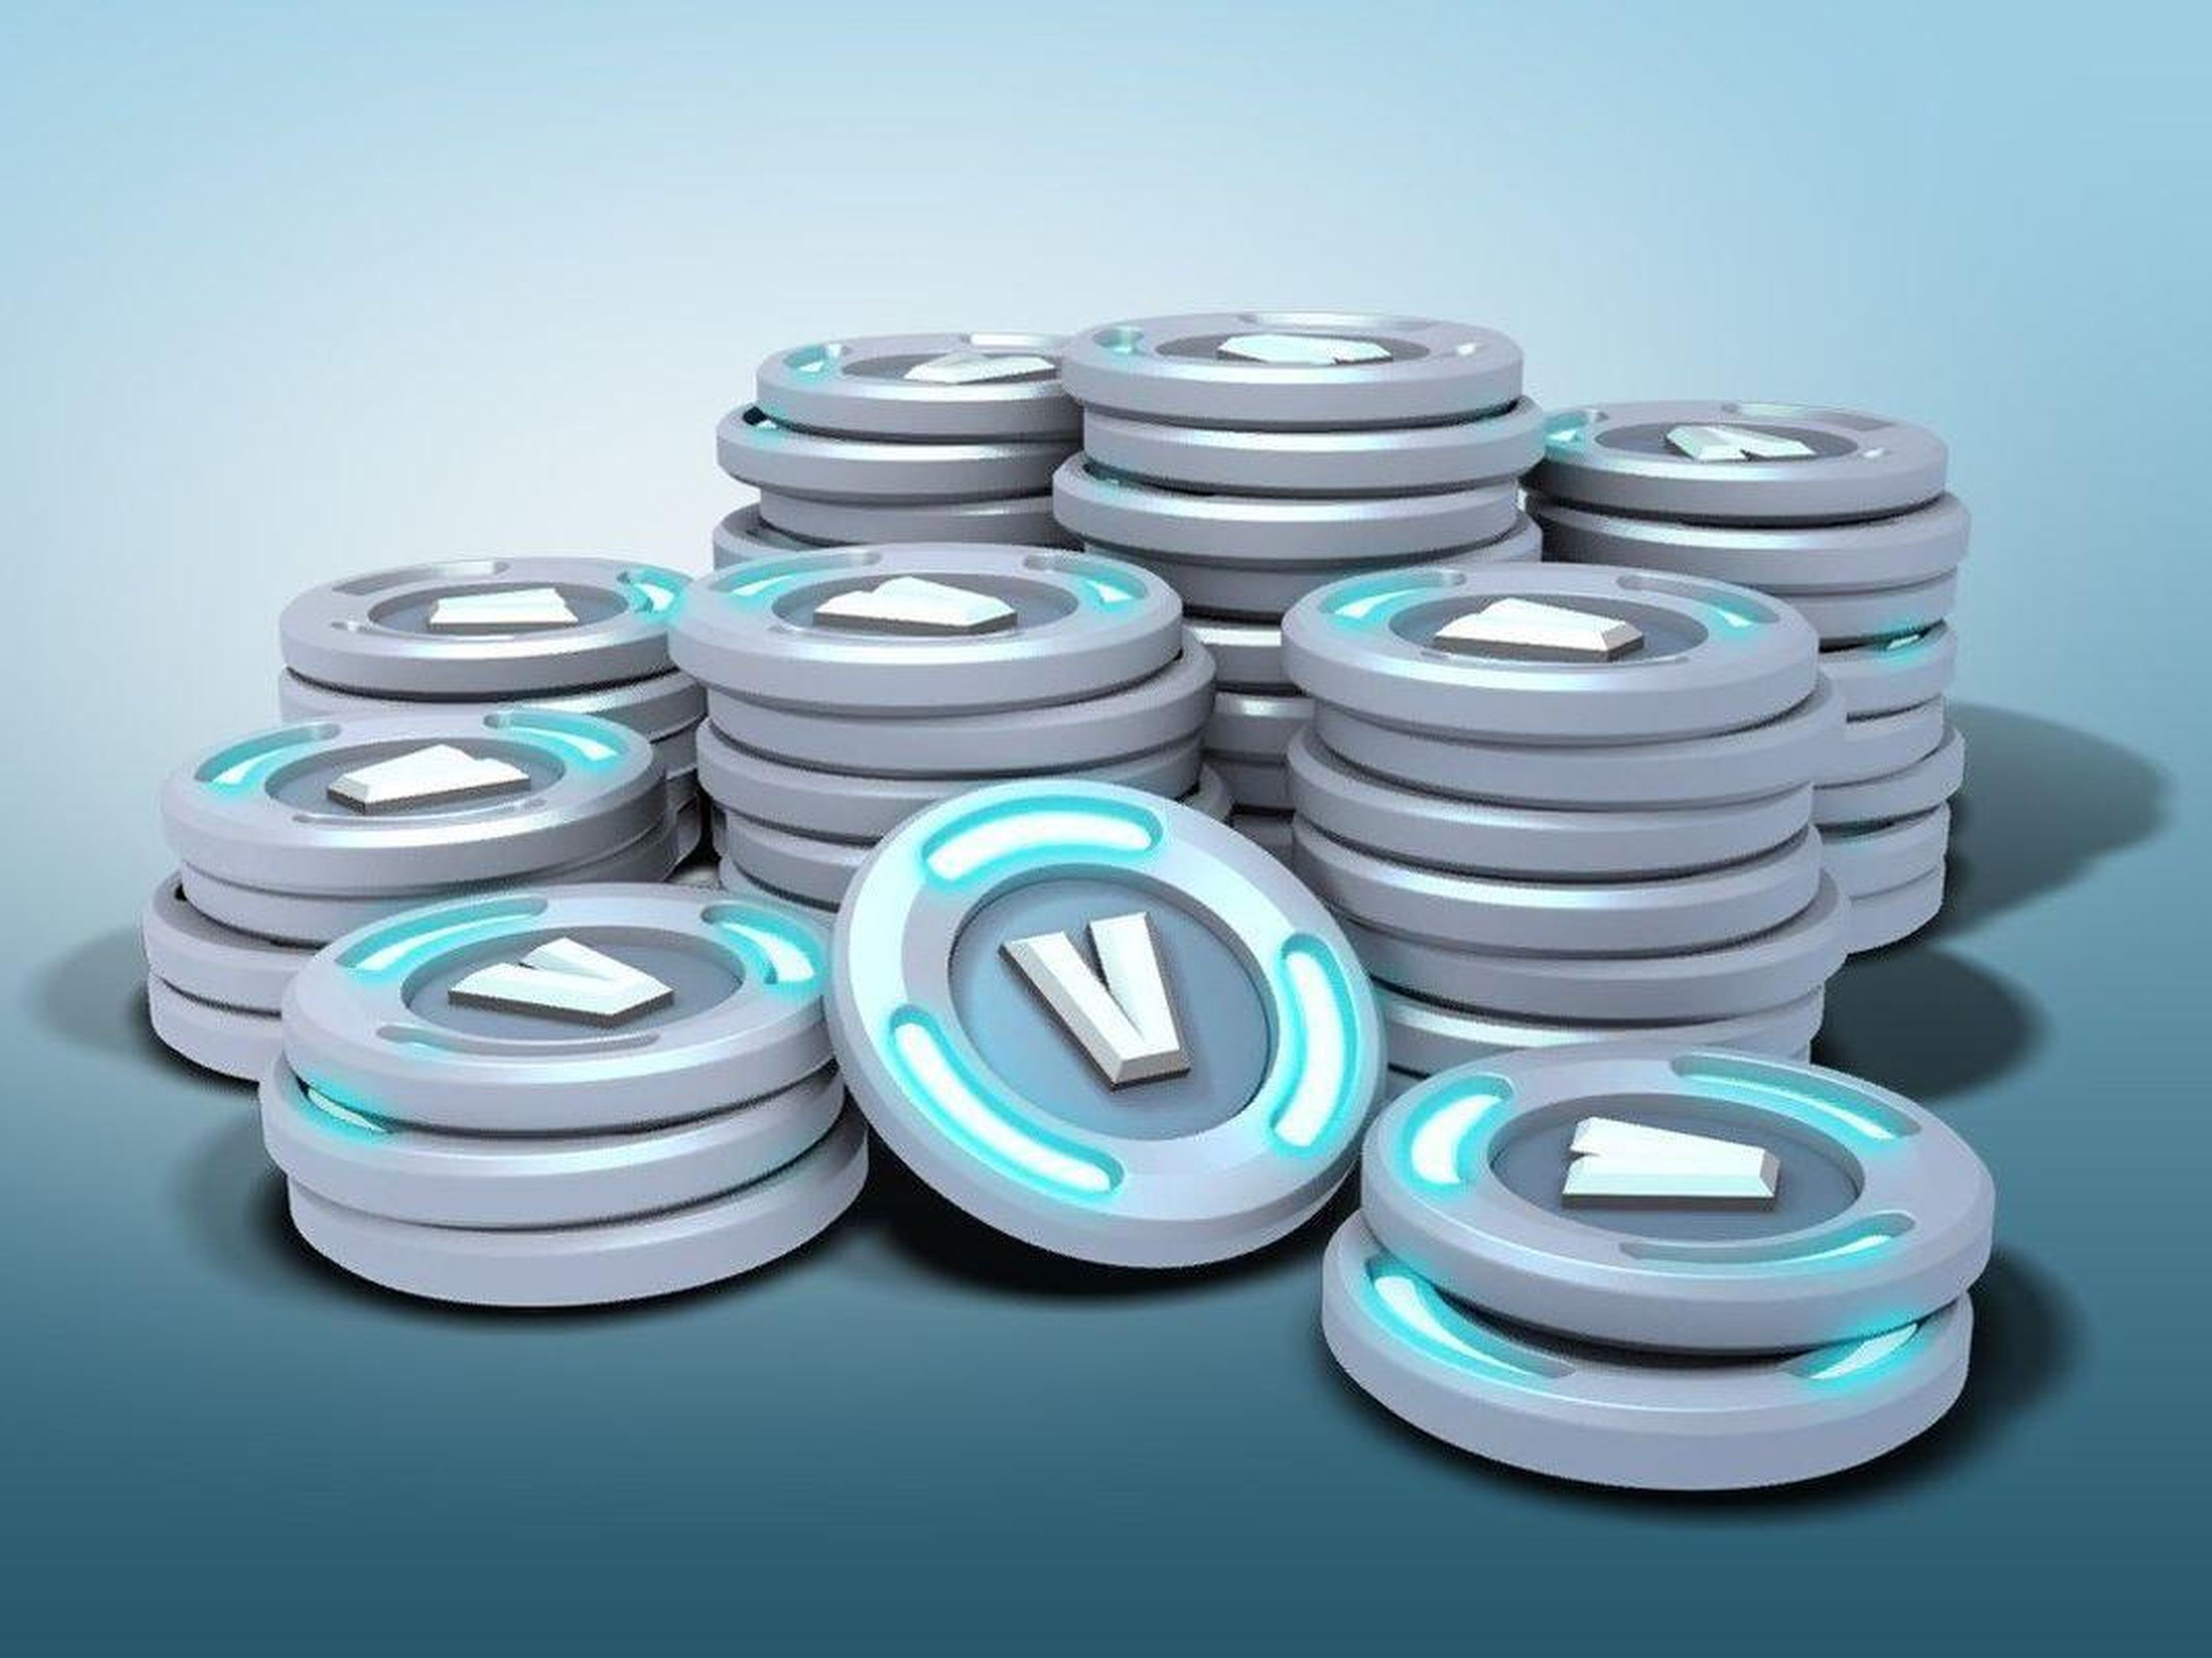 Las monedas virtuales V-bucks de Fortnite.